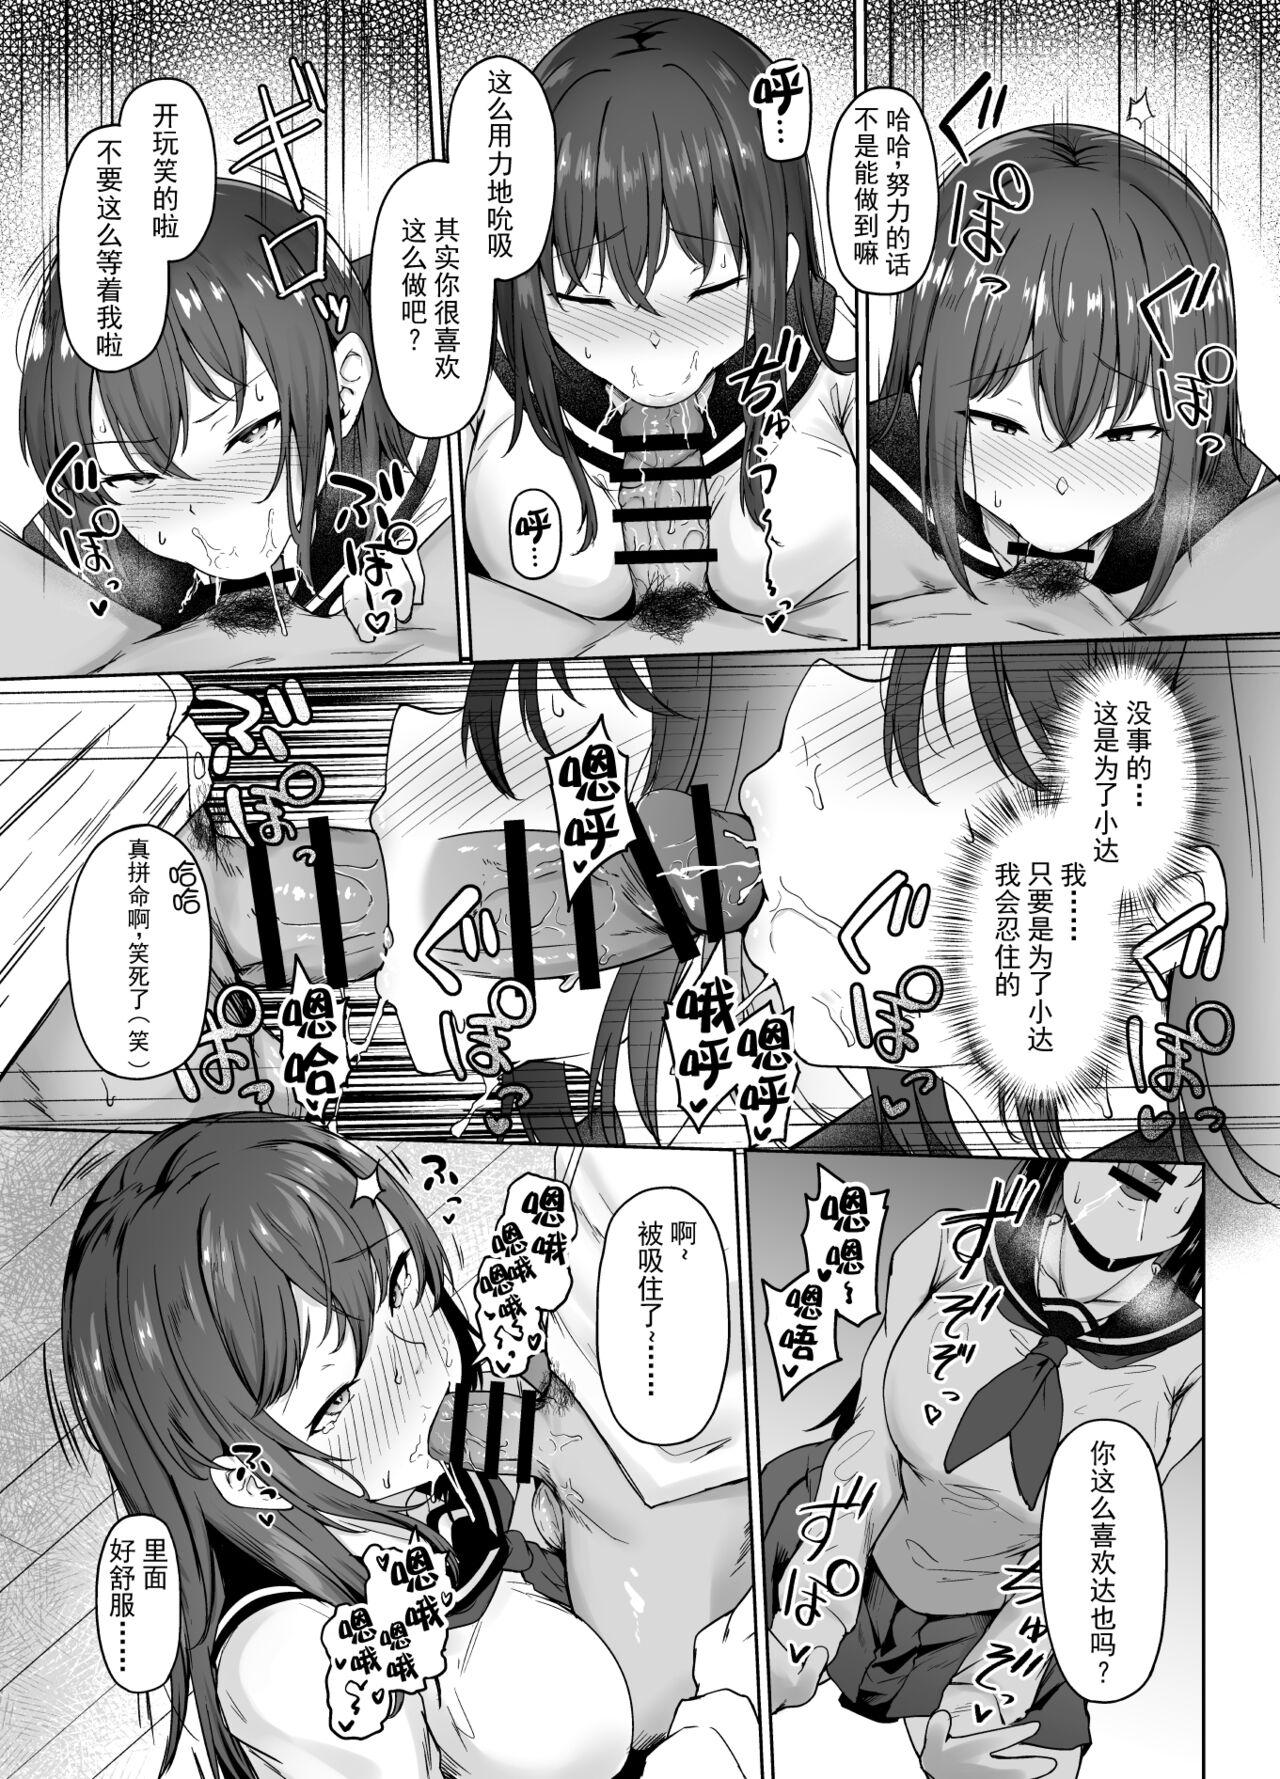 Analfucking Ichizu na Kanojo ga Ochiru Toki | 专一的她堕落的瞬间 - Original Emo - Page 10